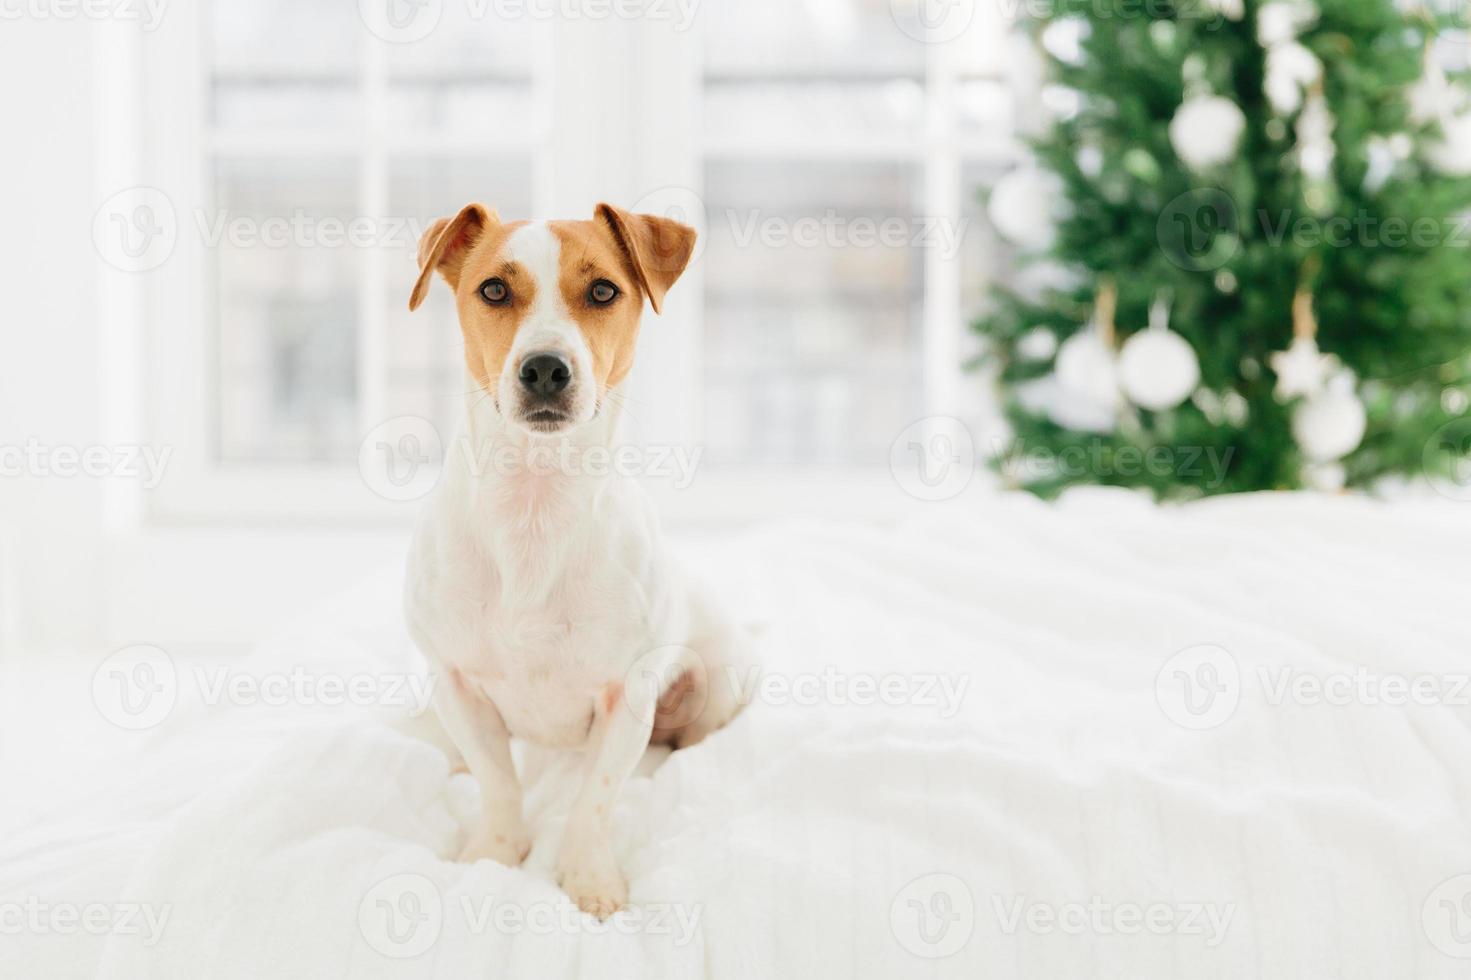 stamboom jack russell terrier hond poseert op bed tegen onscherpe achtergrond, dennenboom symboliseert komende wintervakantie. dieren, kerstmis, nieuwjaarsviering foto